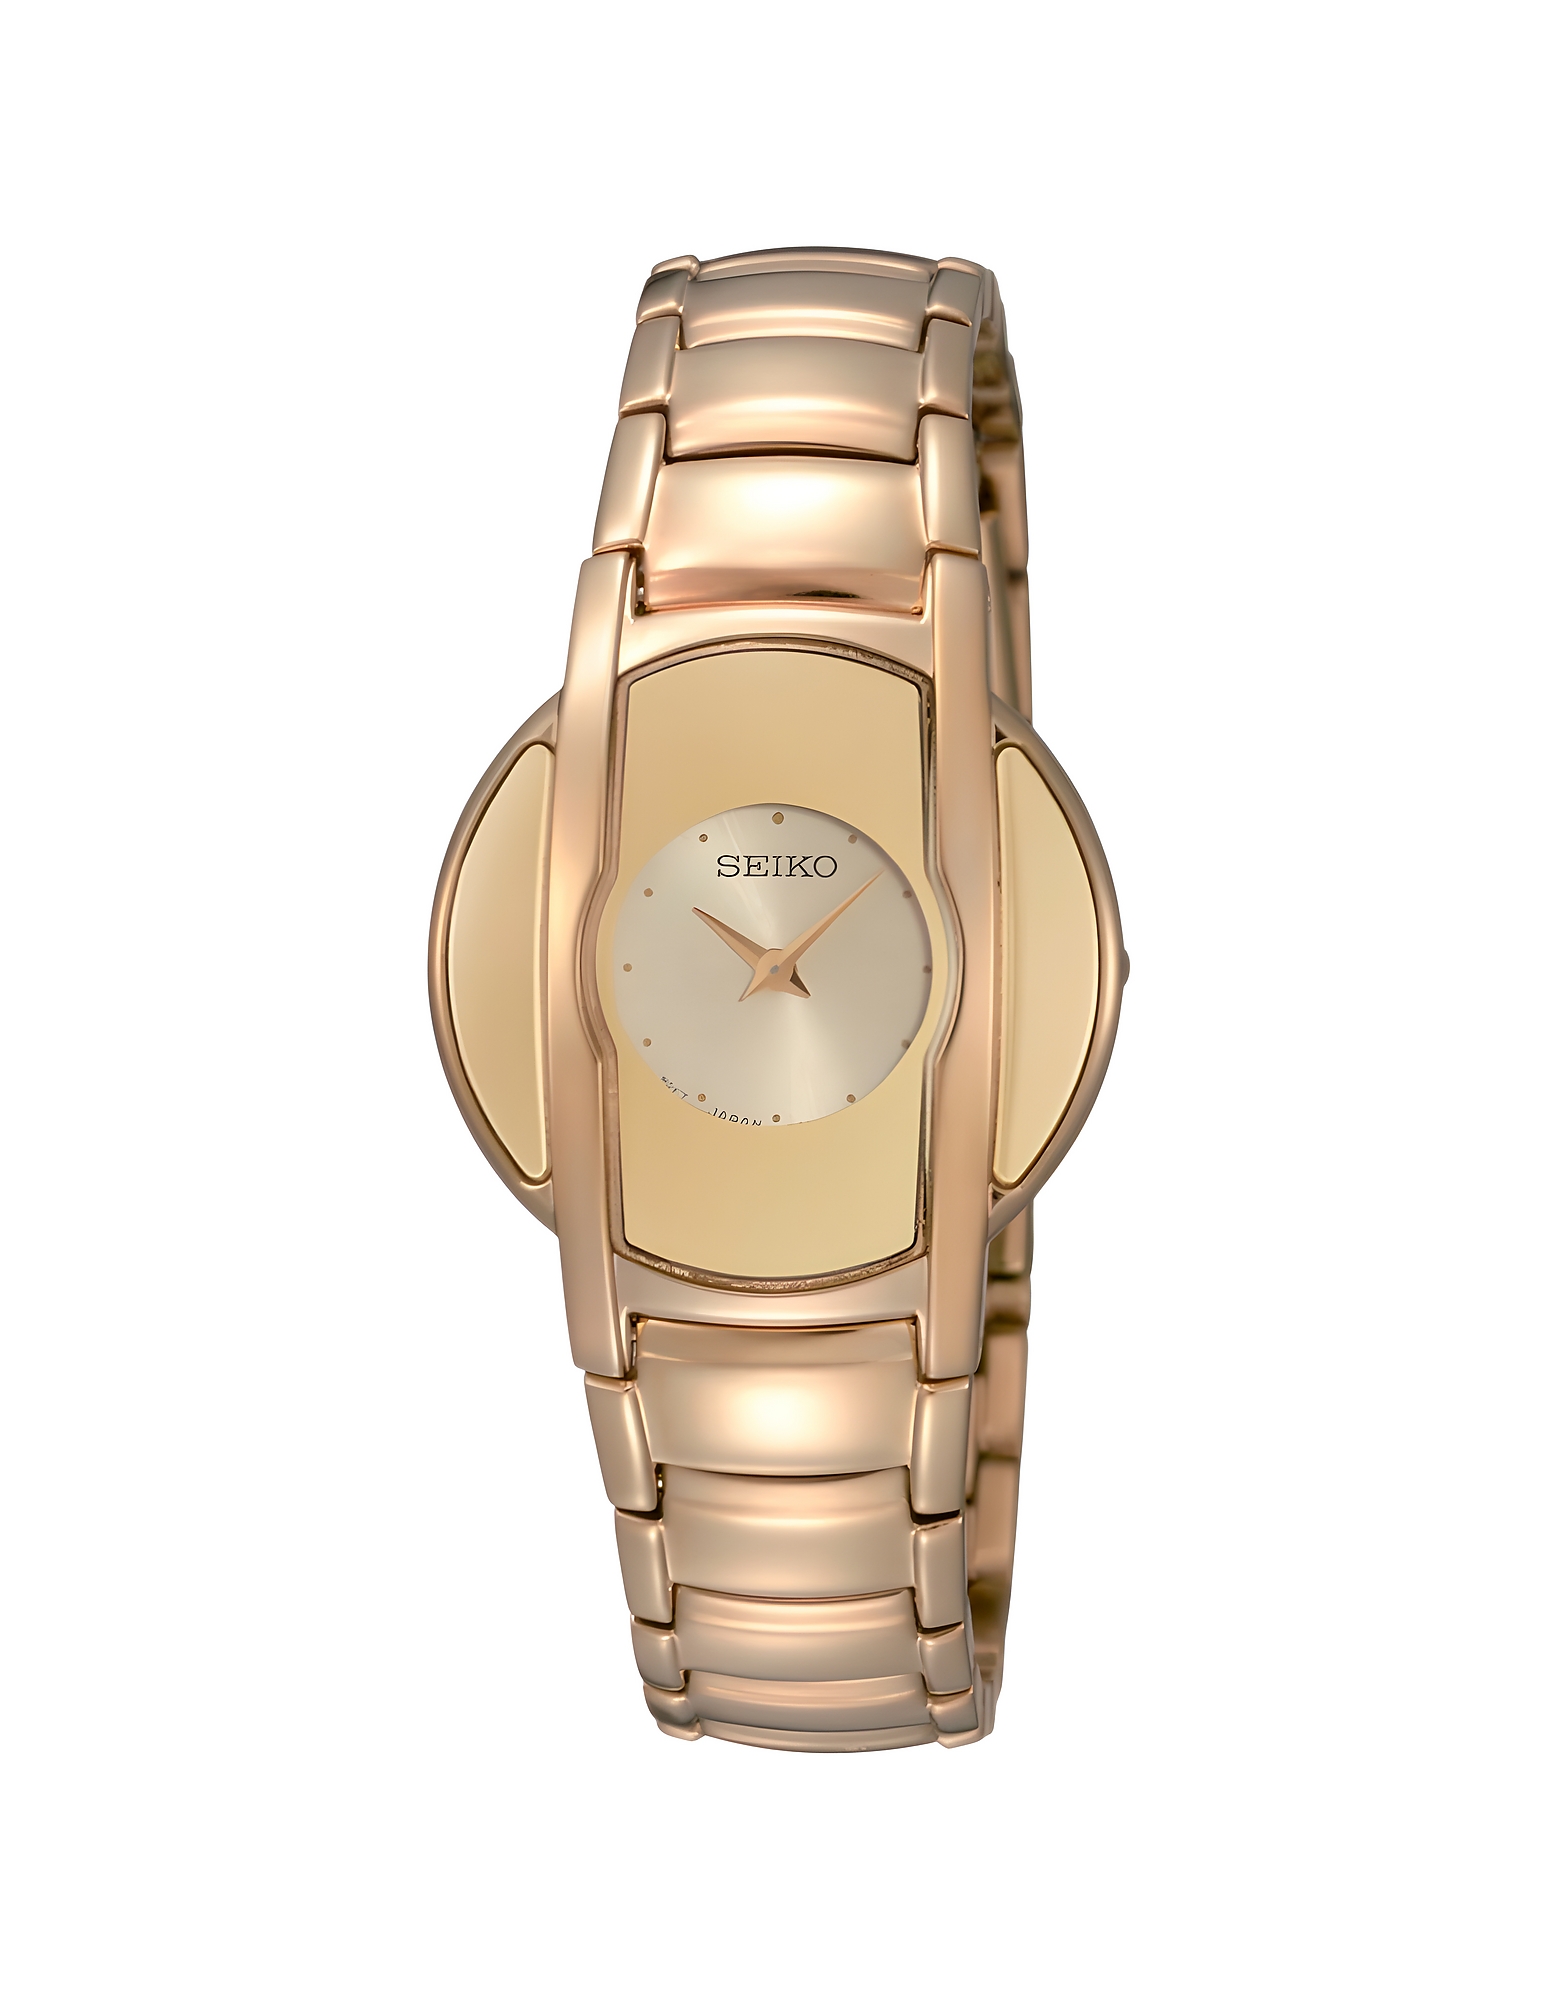 Seiko Designer Women's Watches Women's Quartz Analogue Watch In Gold